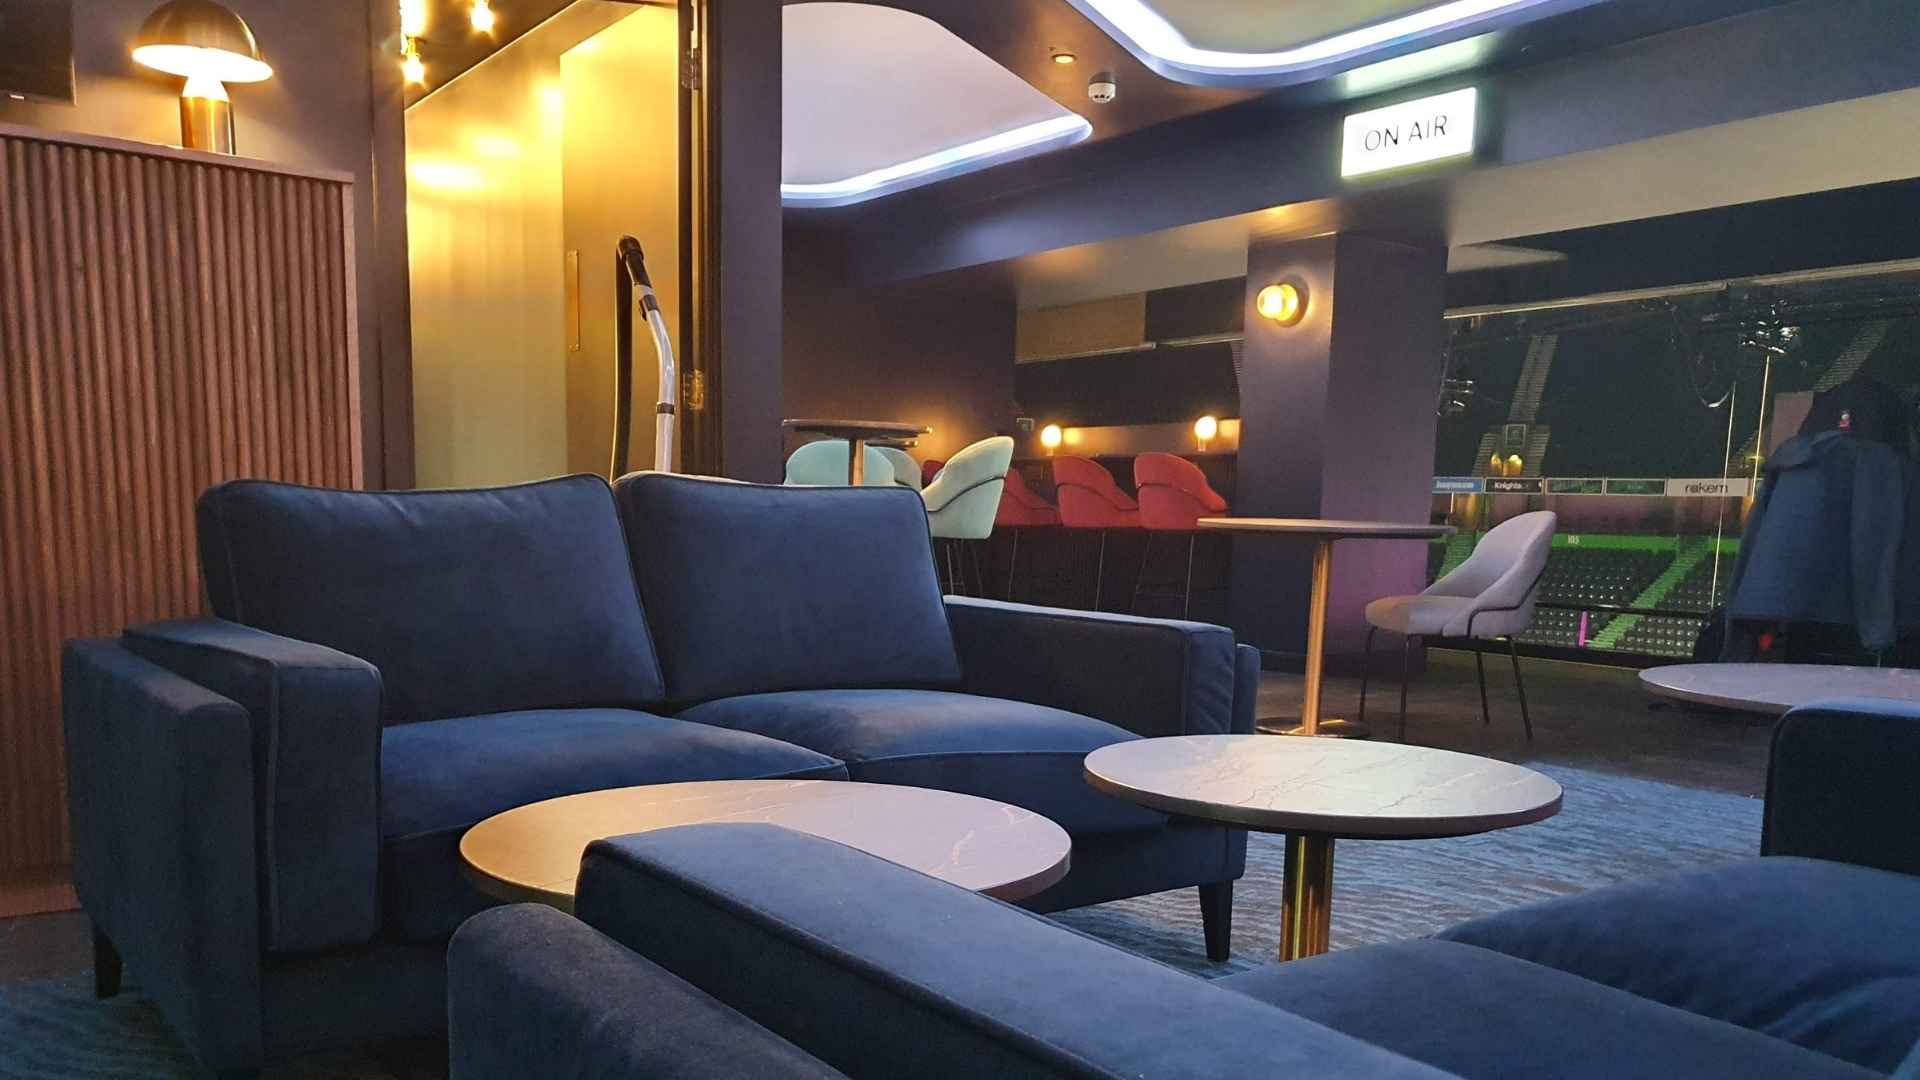 AO arena's exec lounge bar fitout